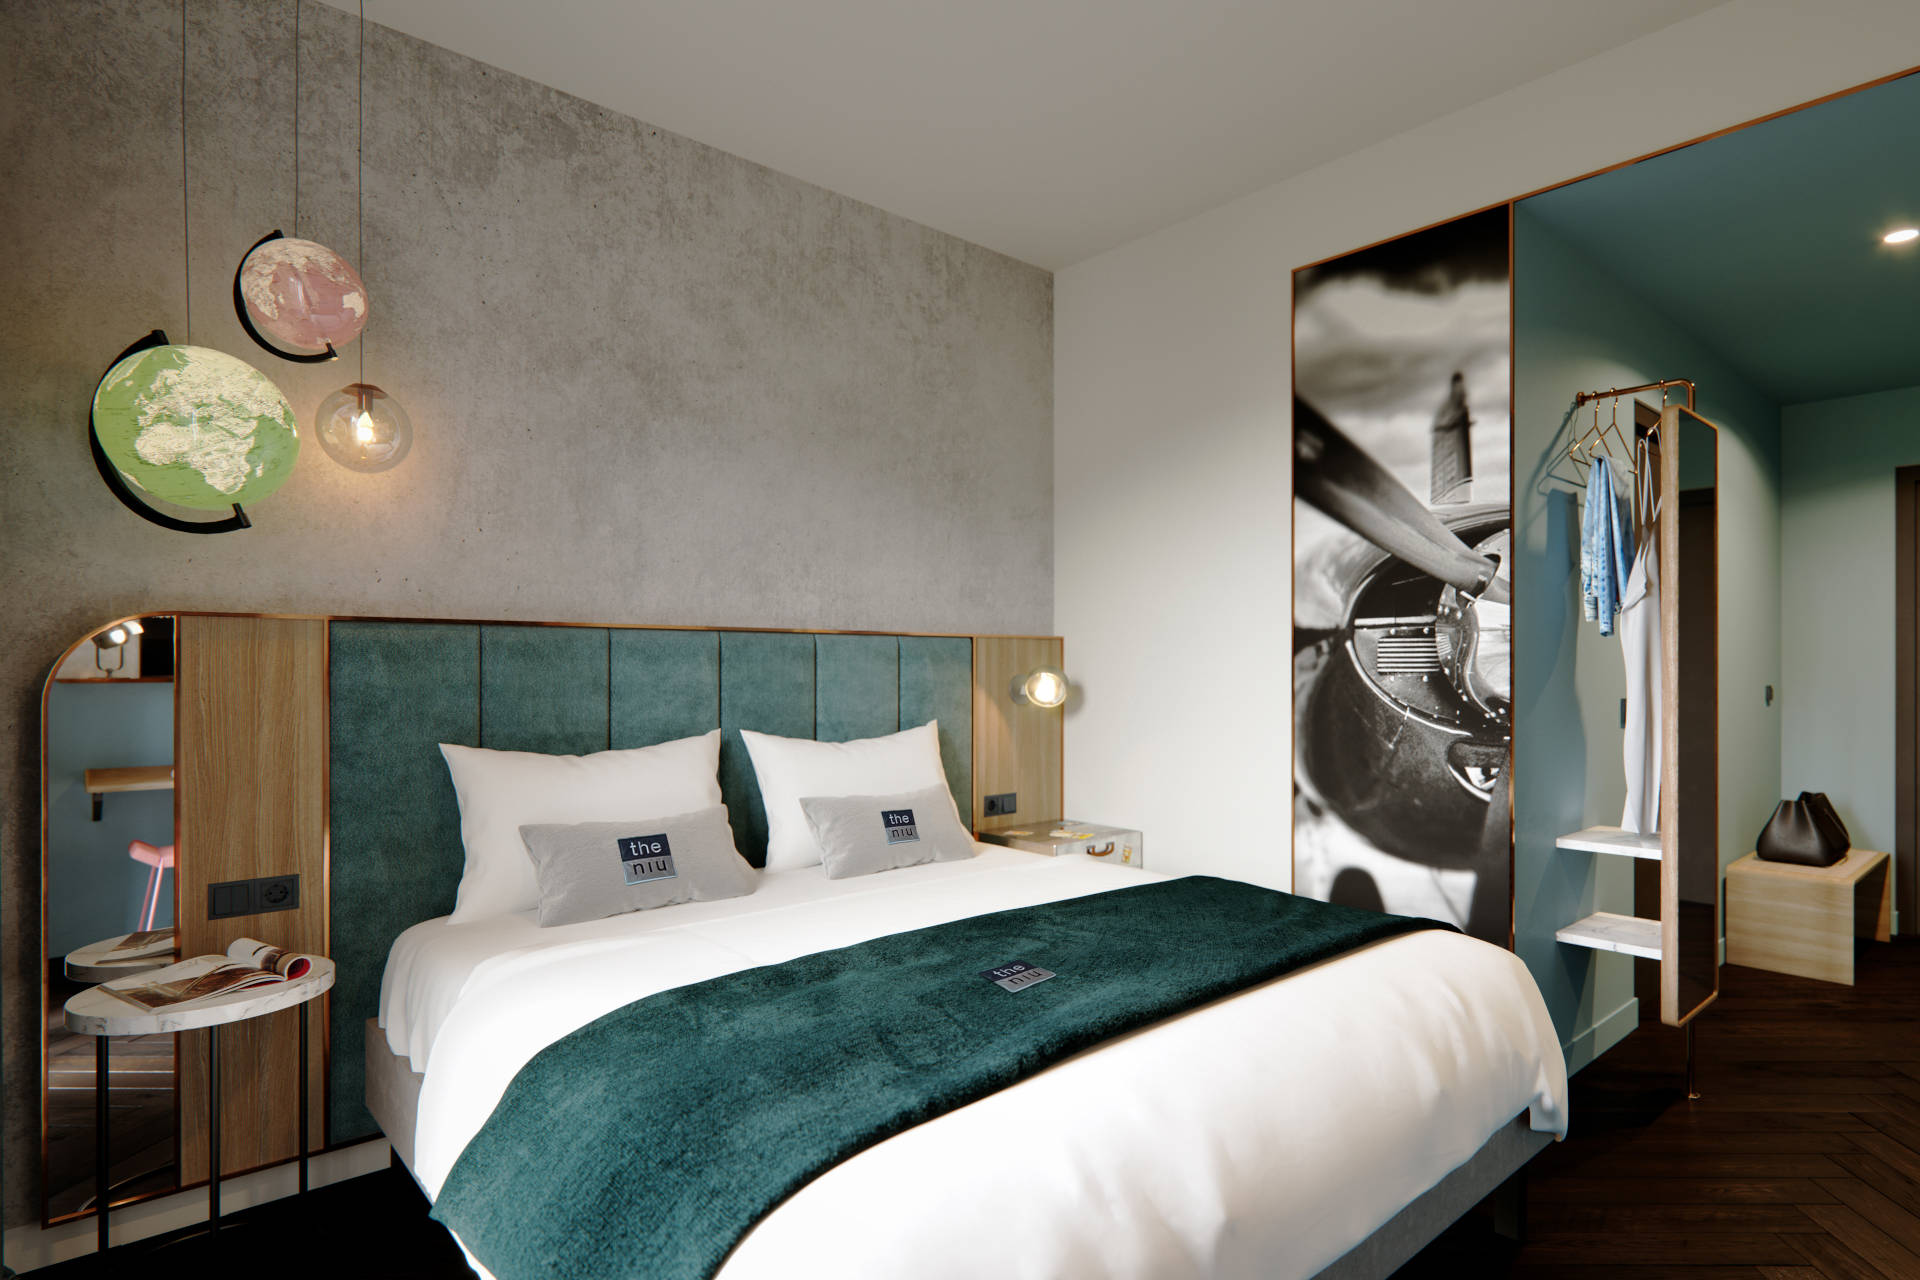  150 Zimmer sollen im Lifestyle-Designhotel »the niu Pax« entstehen. © Novum Hospitality